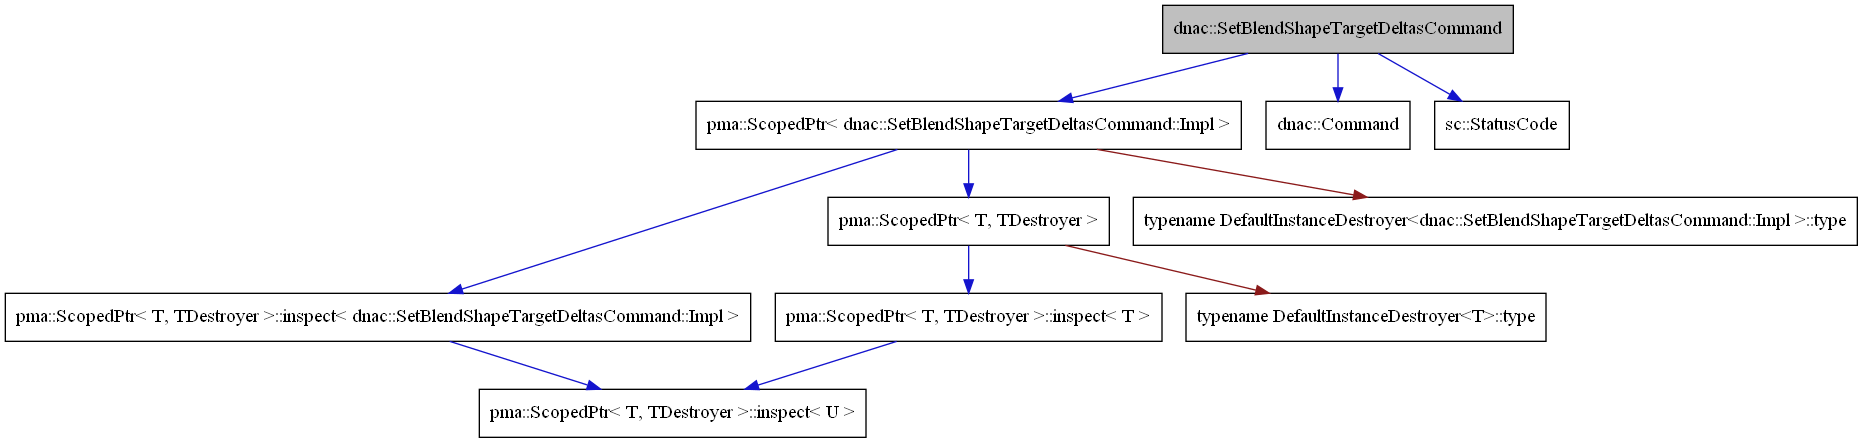 digraph {
    graph [bgcolor="#00000000"]
    node [shape=rectangle style=filled fillcolor="#FFFFFF" font=Helvetica padding=2]
    edge [color="#1414CE"]
    "4" [label="pma::ScopedPtr< dnac::SetBlendShapeTargetDeltasCommand::Impl >" tooltip="pma::ScopedPtr< dnac::SetBlendShapeTargetDeltasCommand::Impl >"]
    "2" [label="dnac::Command" tooltip="dnac::Command"]
    "1" [label="dnac::SetBlendShapeTargetDeltasCommand" tooltip="dnac::SetBlendShapeTargetDeltasCommand" fillcolor="#BFBFBF"]
    "10" [label="pma::ScopedPtr< T, TDestroyer >::inspect< T >" tooltip="pma::ScopedPtr< T, TDestroyer >::inspect< T >"]
    "6" [label="pma::ScopedPtr< T, TDestroyer >::inspect< dnac::SetBlendShapeTargetDeltasCommand::Impl >" tooltip="pma::ScopedPtr< T, TDestroyer >::inspect< dnac::SetBlendShapeTargetDeltasCommand::Impl >"]
    "8" [label="pma::ScopedPtr< T, TDestroyer >" tooltip="pma::ScopedPtr< T, TDestroyer >"]
    "7" [label="pma::ScopedPtr< T, TDestroyer >::inspect< U >" tooltip="pma::ScopedPtr< T, TDestroyer >::inspect< U >"]
    "3" [label="sc::StatusCode" tooltip="sc::StatusCode"]
    "9" [label="typename DefaultInstanceDestroyer<T>::type" tooltip="typename DefaultInstanceDestroyer<T>::type"]
    "5" [label="typename DefaultInstanceDestroyer<dnac::SetBlendShapeTargetDeltasCommand::Impl >::type" tooltip="typename DefaultInstanceDestroyer<dnac::SetBlendShapeTargetDeltasCommand::Impl >::type"]
    "4" -> "5" [dir=forward tooltip="private-inheritance" color="#8B1A1A"]
    "4" -> "6" [dir=forward tooltip="usage"]
    "4" -> "8" [dir=forward tooltip="template-instance"]
    "1" -> "2" [dir=forward tooltip="public-inheritance"]
    "1" -> "3" [dir=forward tooltip="usage"]
    "1" -> "4" [dir=forward tooltip="usage"]
    "10" -> "7" [dir=forward tooltip="template-instance"]
    "6" -> "7" [dir=forward tooltip="template-instance"]
    "8" -> "9" [dir=forward tooltip="private-inheritance" color="#8B1A1A"]
    "8" -> "10" [dir=forward tooltip="usage"]
}